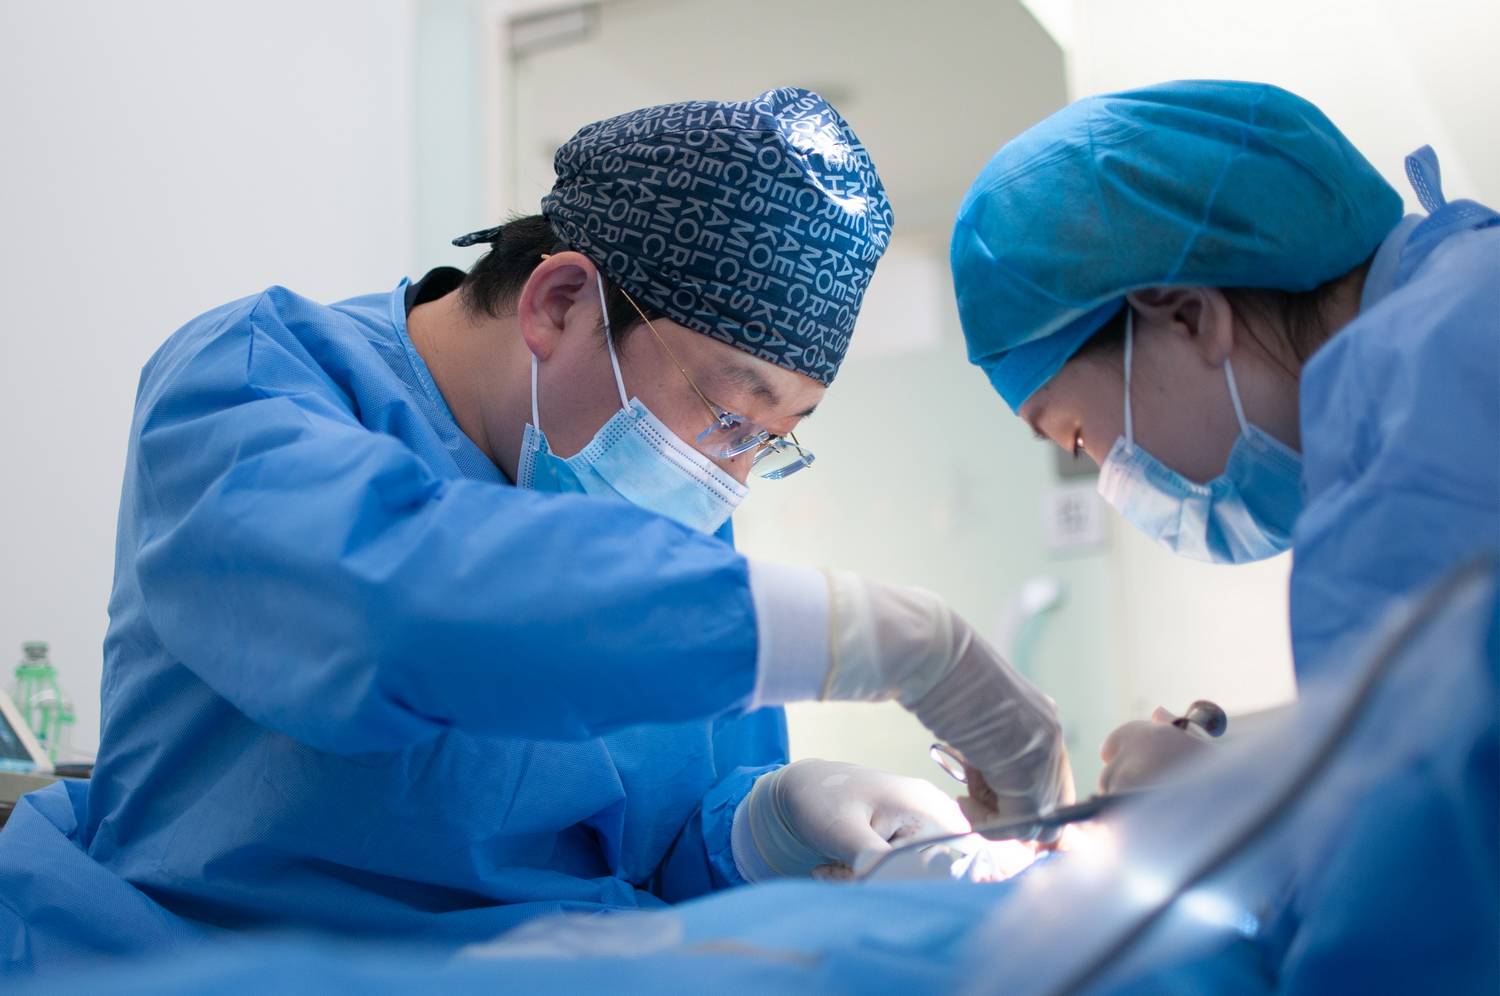 Chirurgia plastyczna – gdzie studiować, by wykonywać ten zawód?